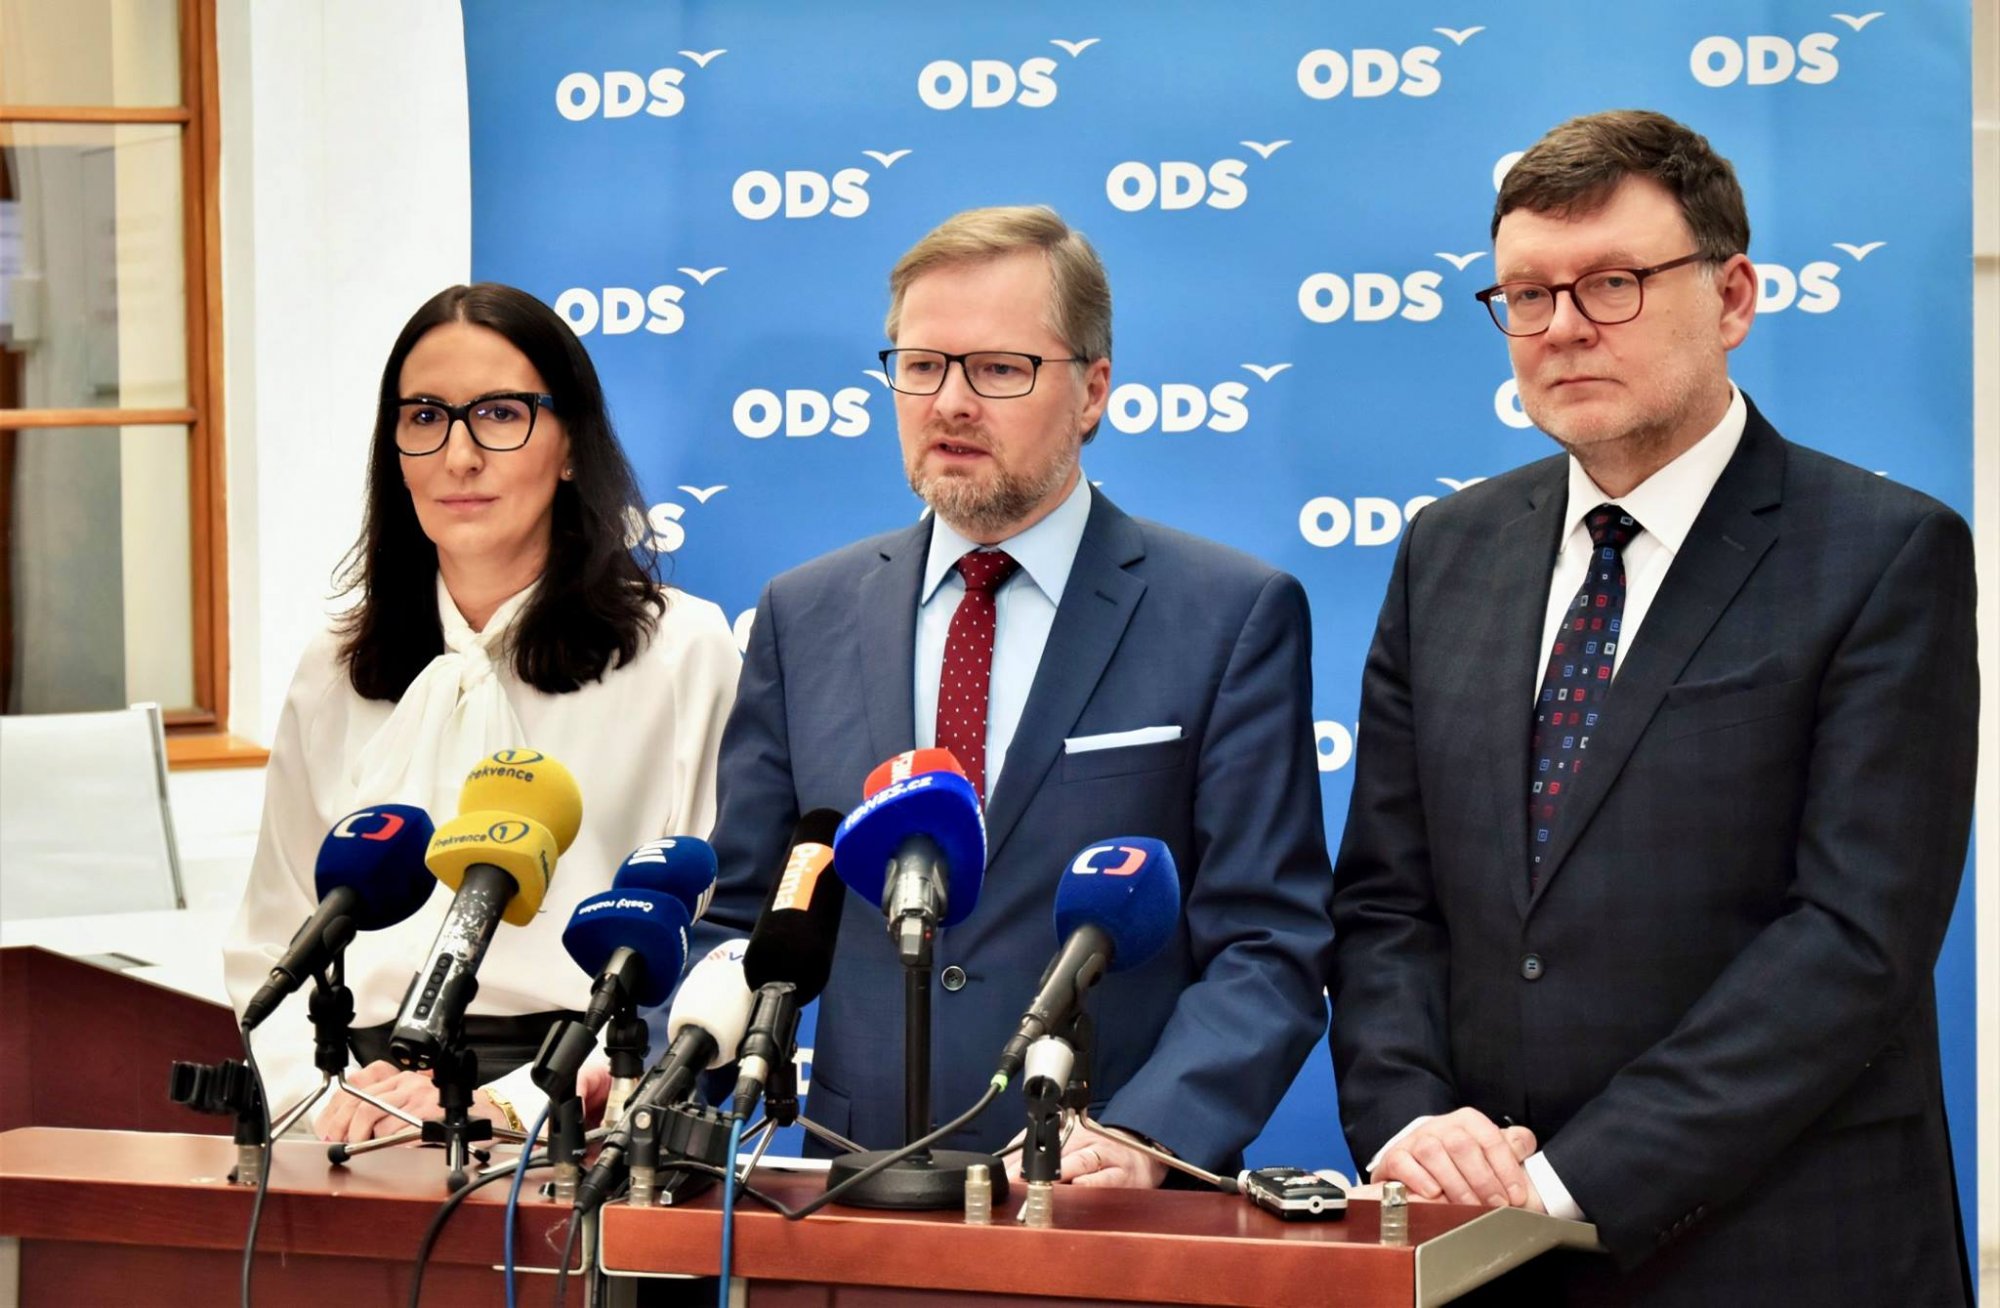 ODS: Prezident dnes jmenoval vládu, která se zapíše do dějin ČR jako první politicky polokomunistická vláda po roce 1989.